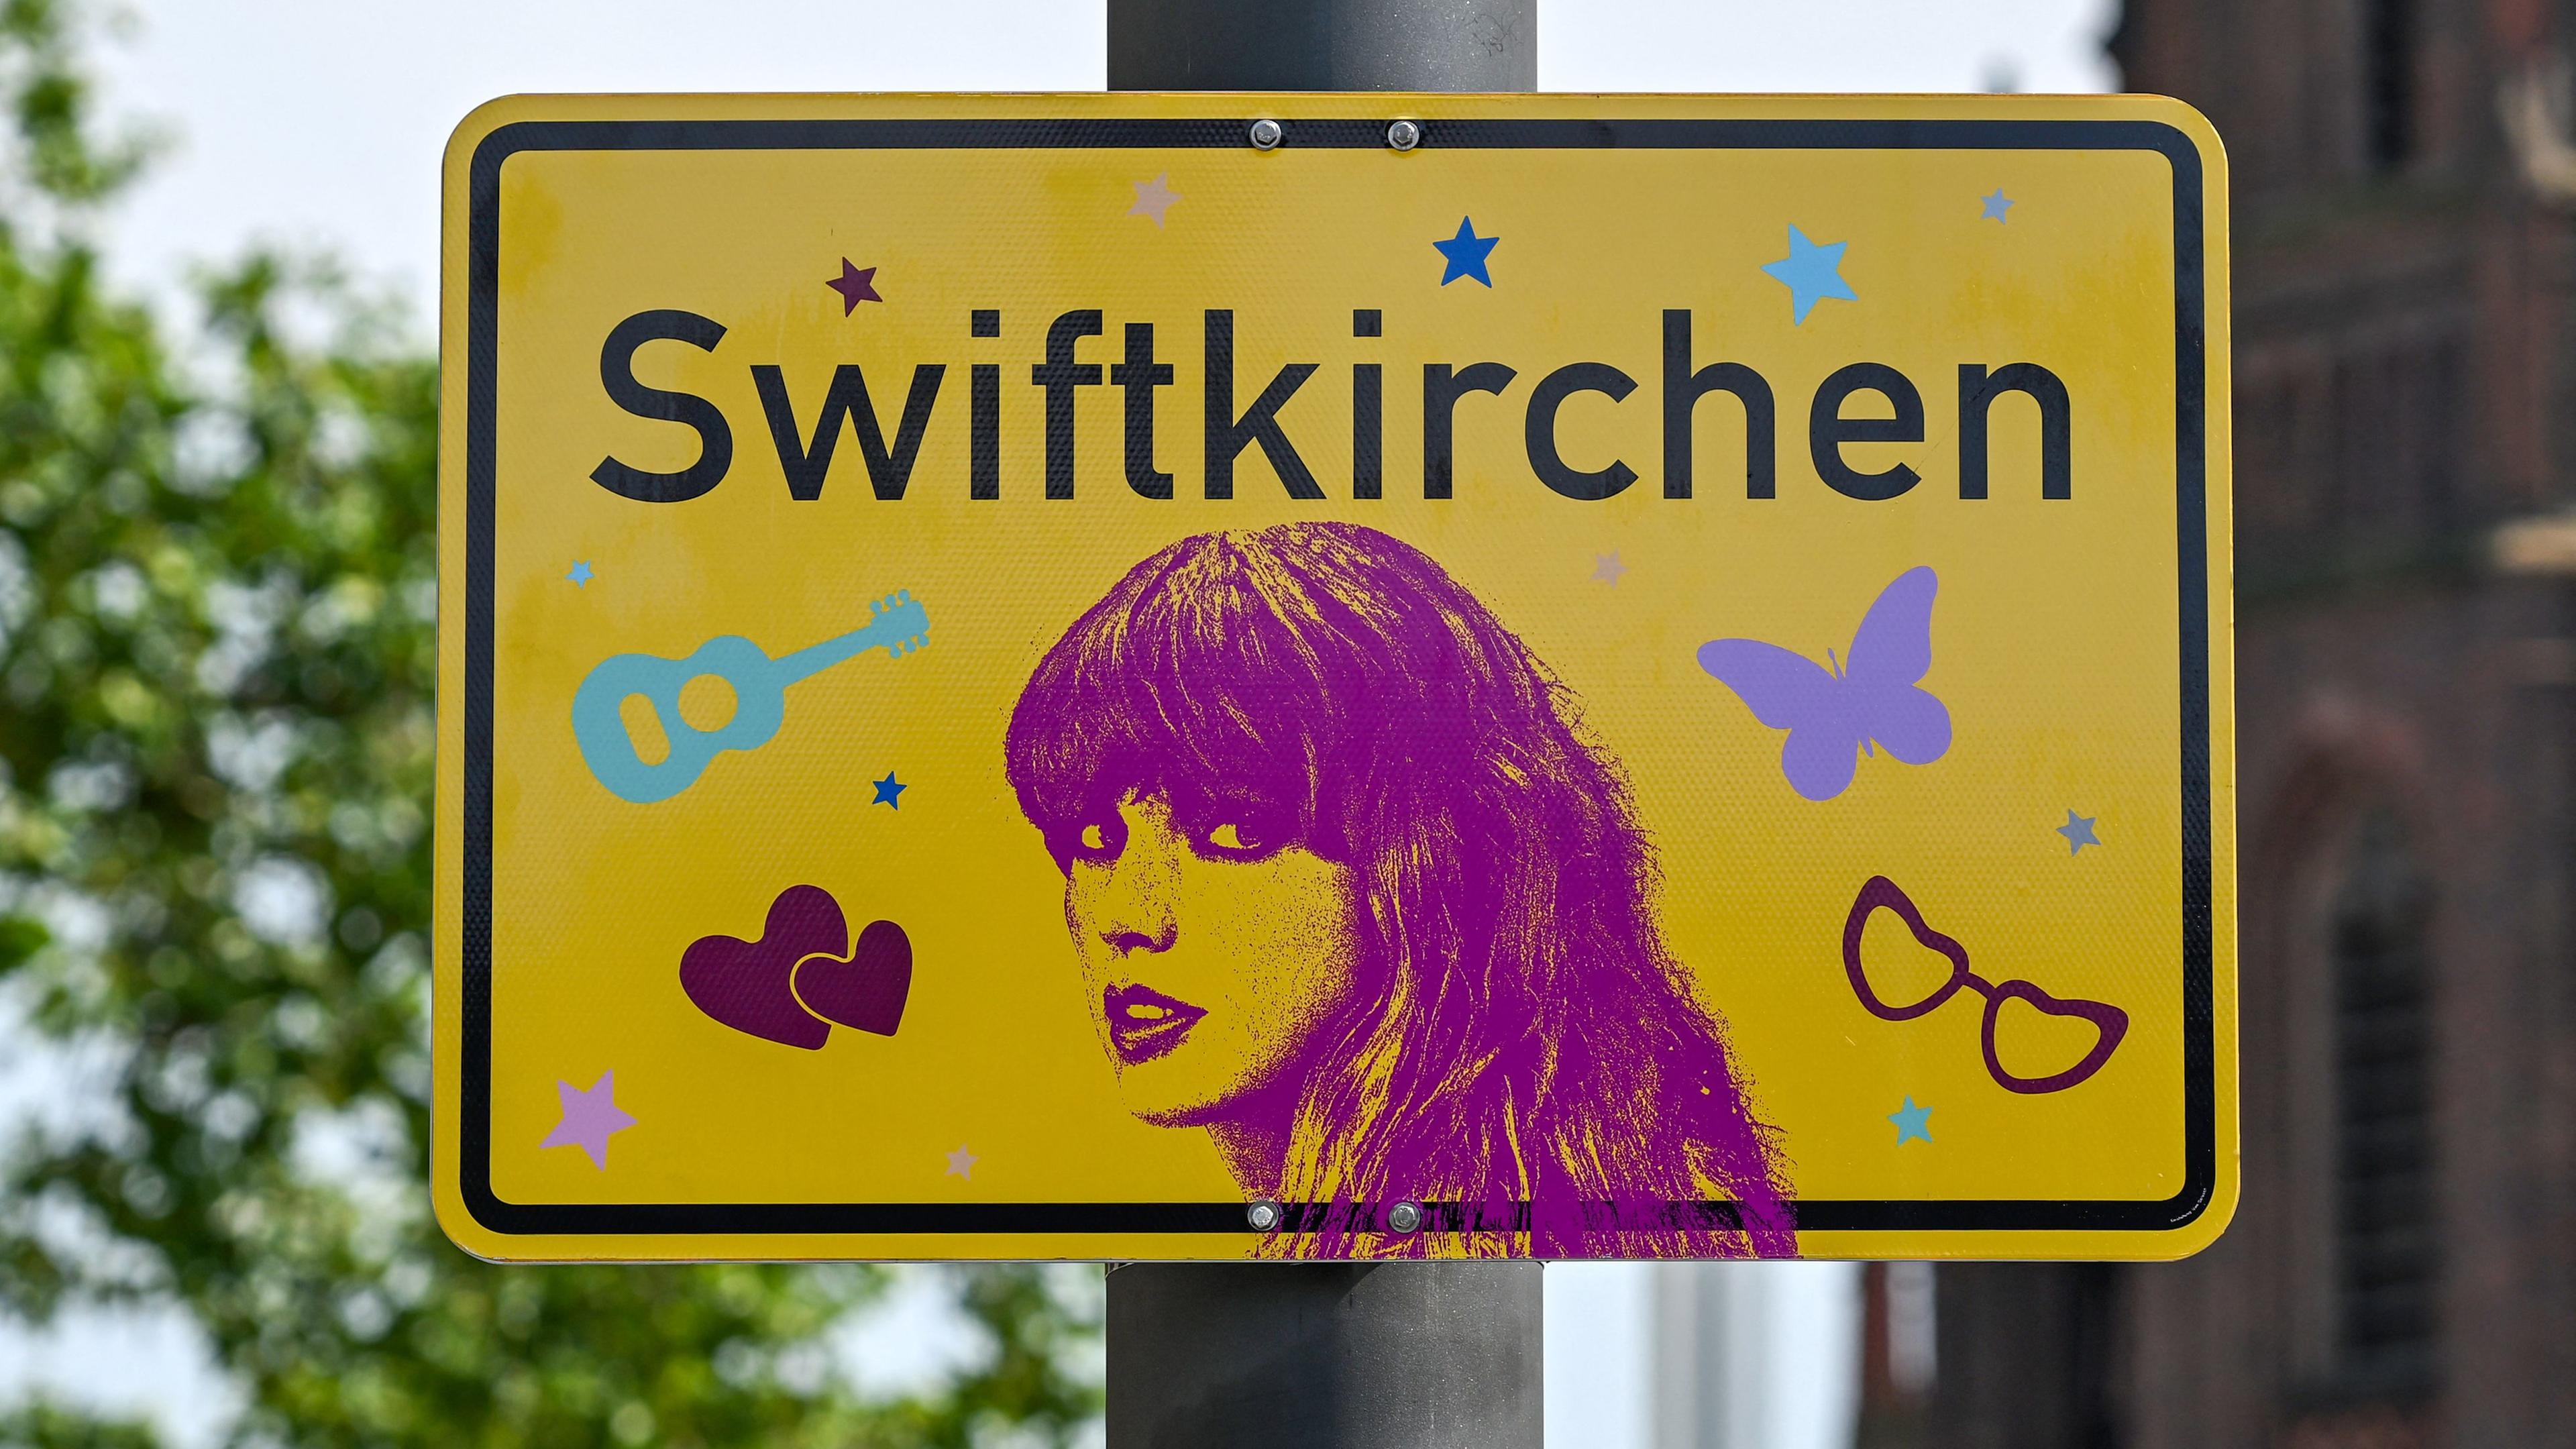 Stadtschild mit der Aufschrift: "Swiftkirchen"